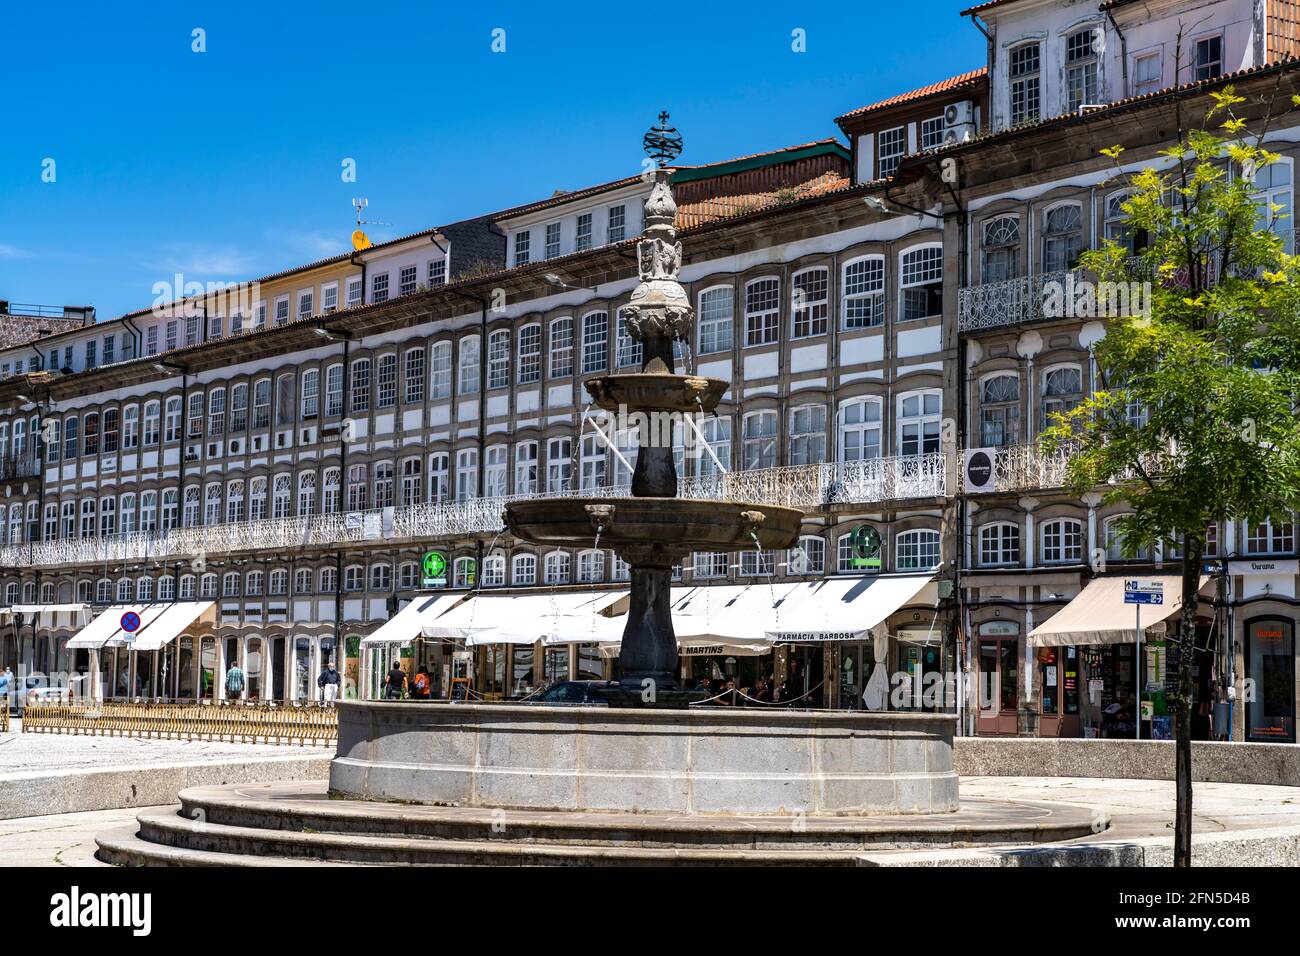 Brunnen auf dem Platz Largo do Toural, Guimaraes, Portugal, Europa | Fontaine sur la place Largo do Toural, Guimaraes, Portugal, Europe Banque D'Images